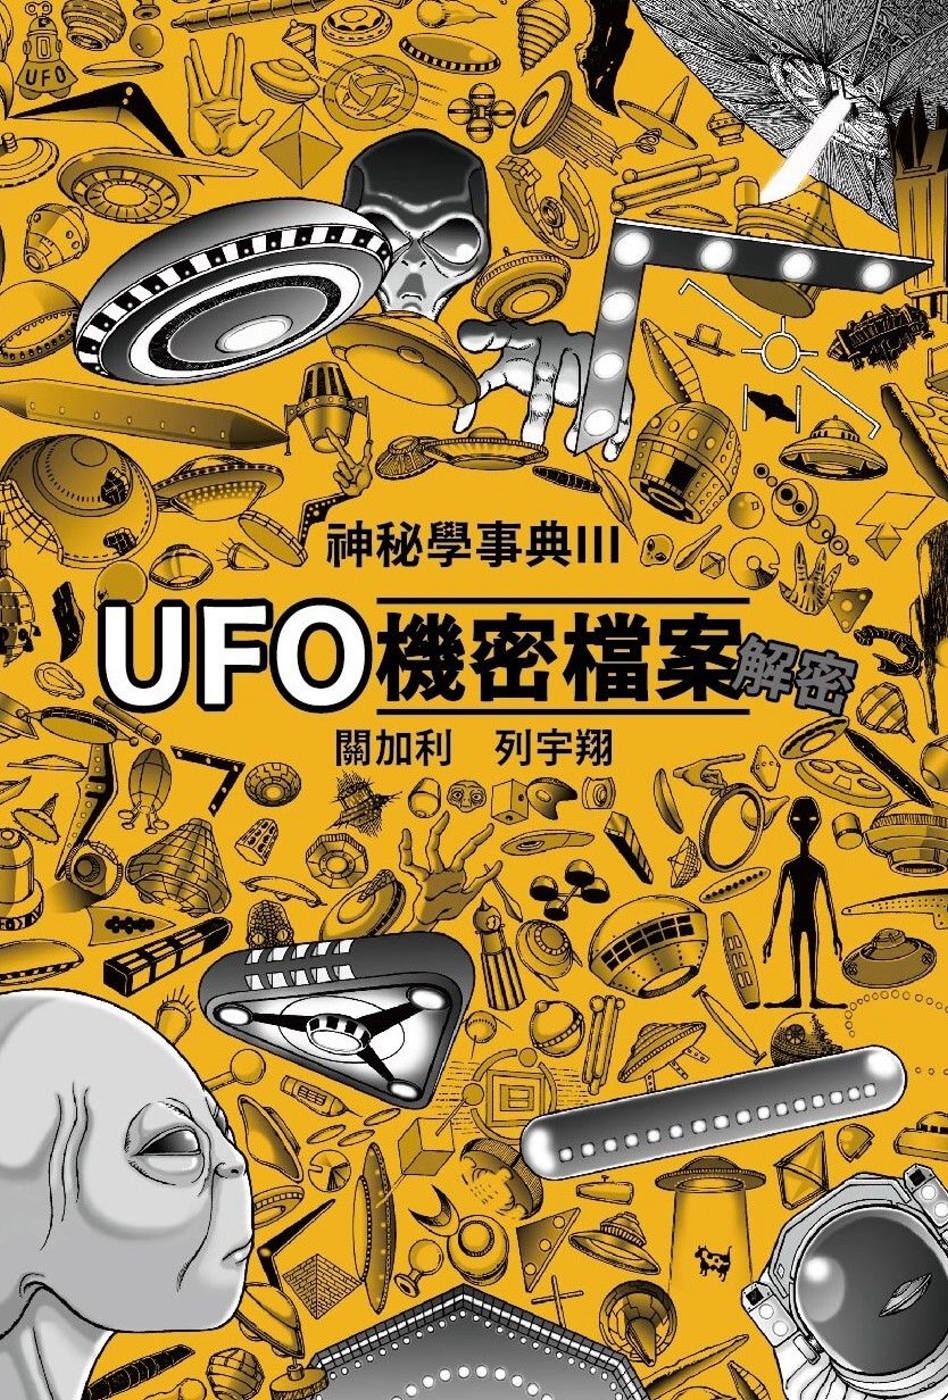 UFO機密檔案解密 神秘學事典3